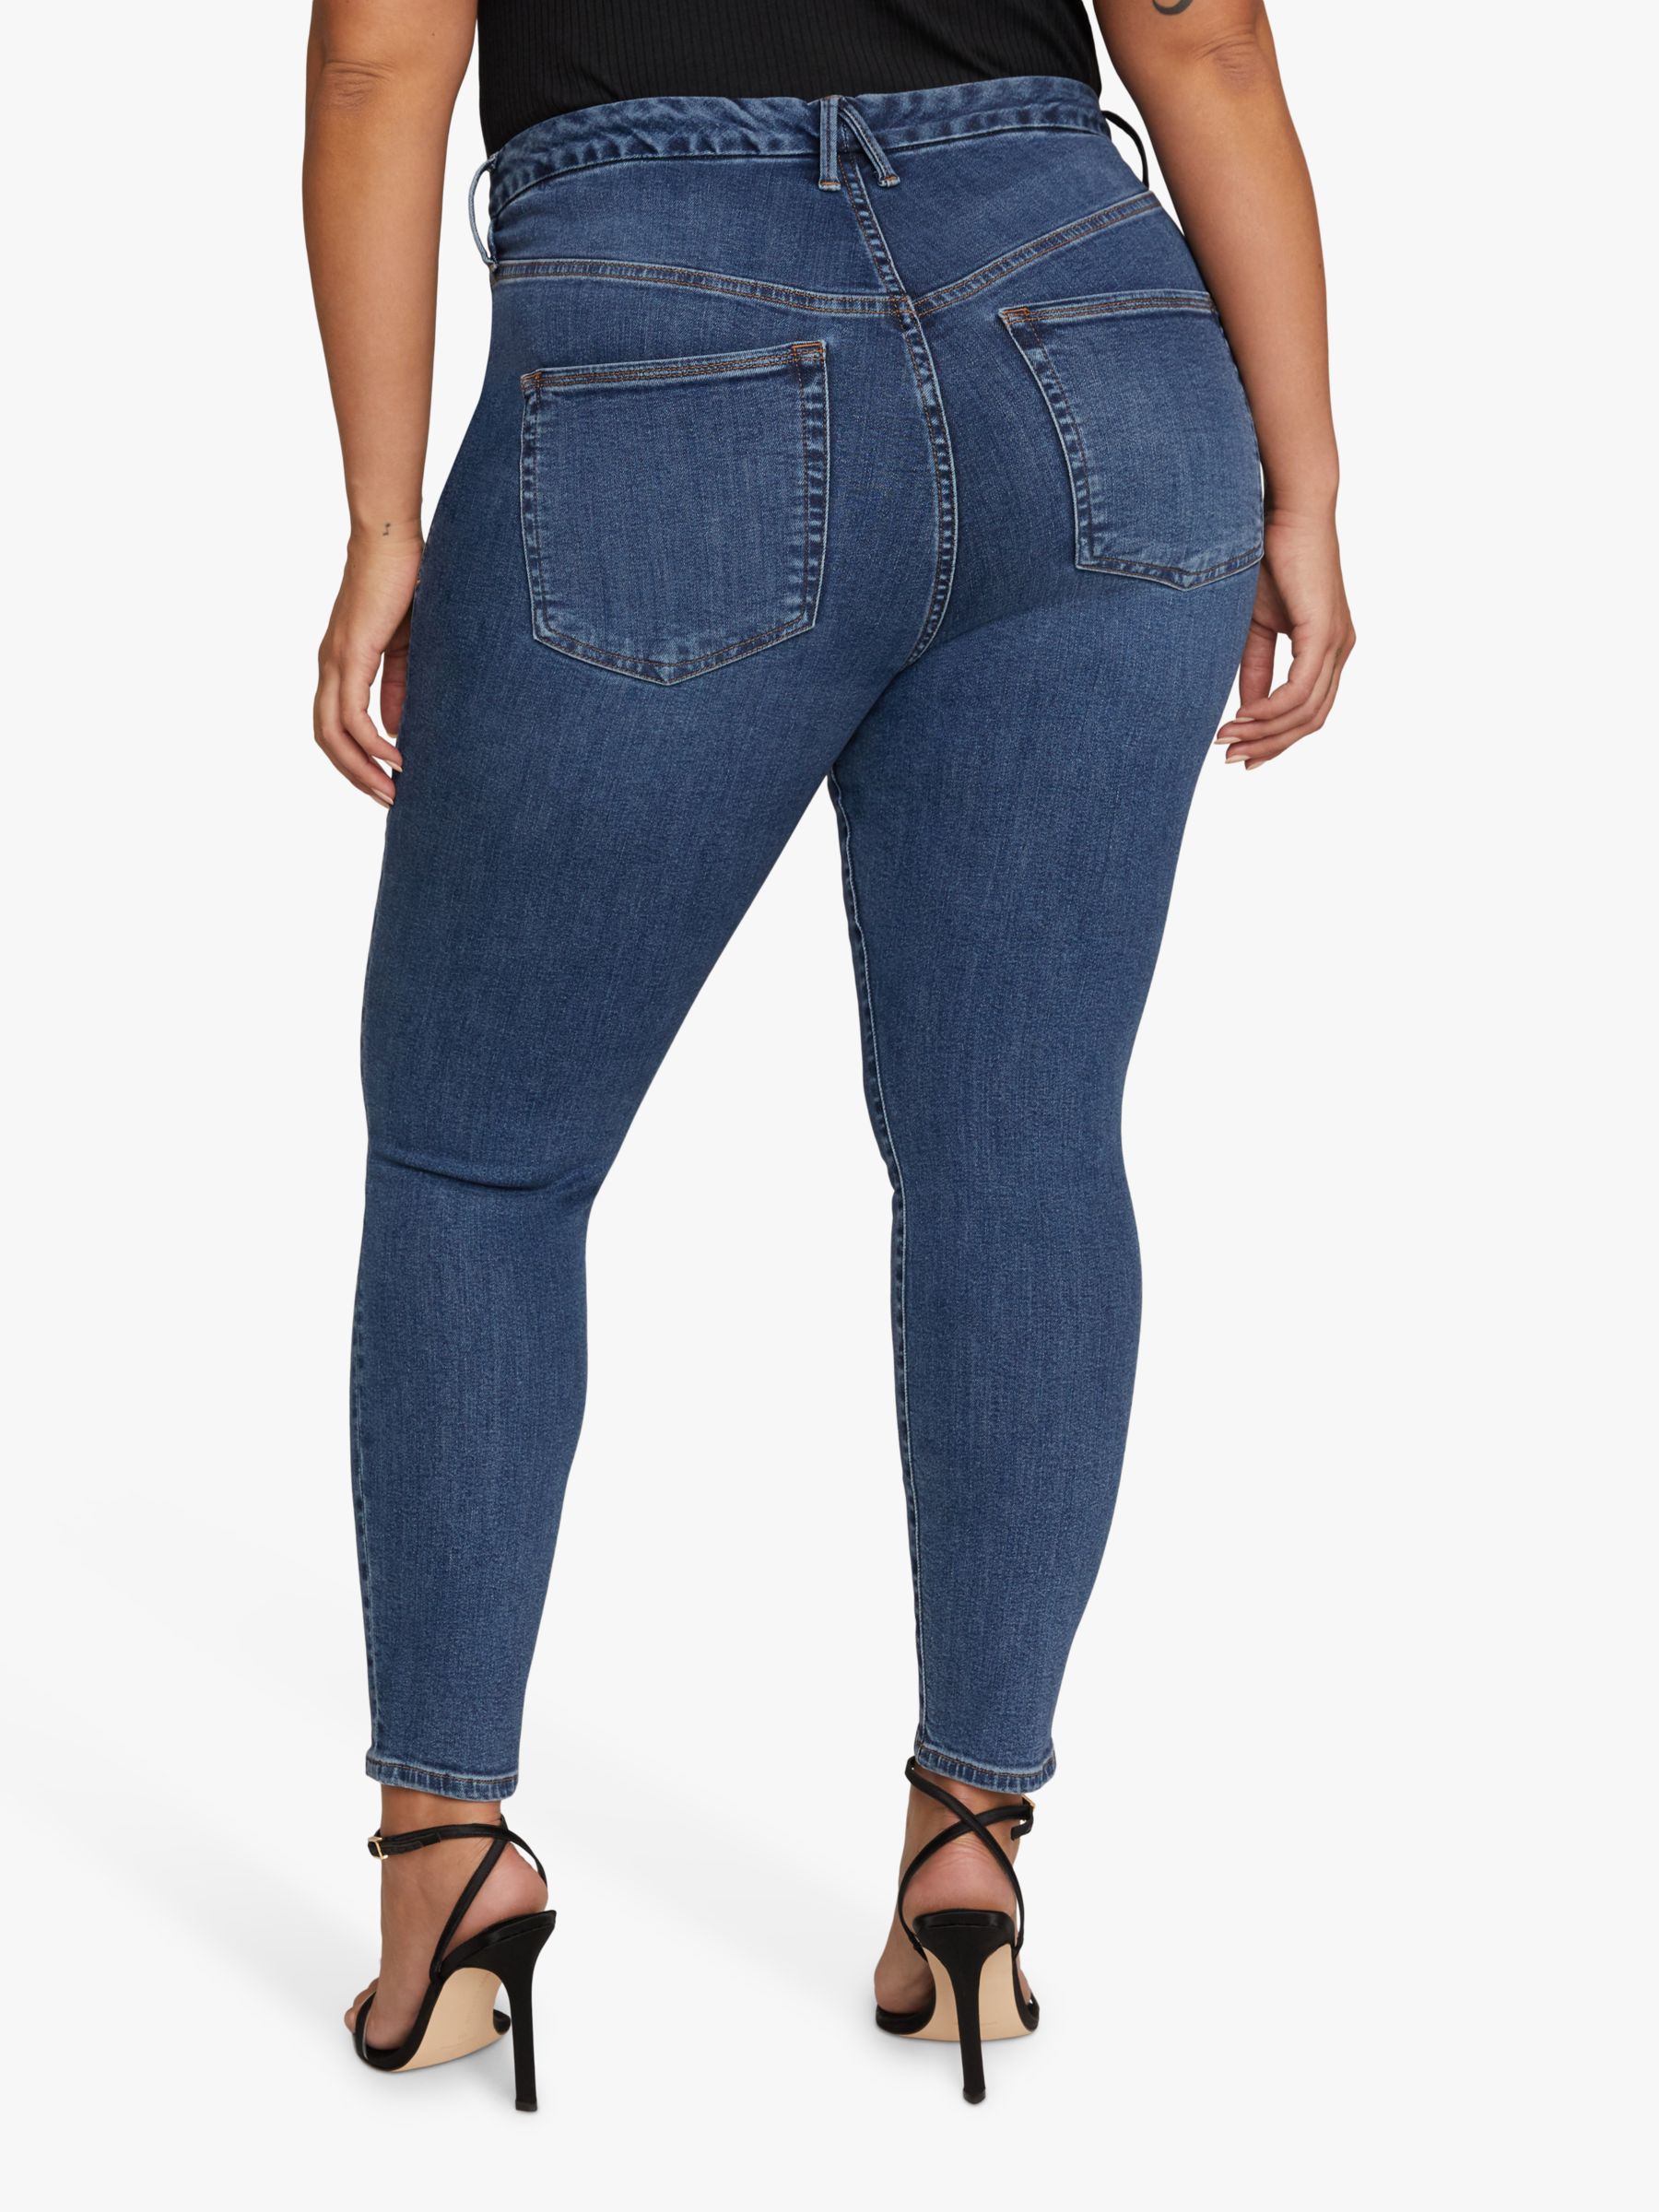 Chicos ' So Slimming ' Womens Medium Dark Wash Crop Jeans Size 1.5